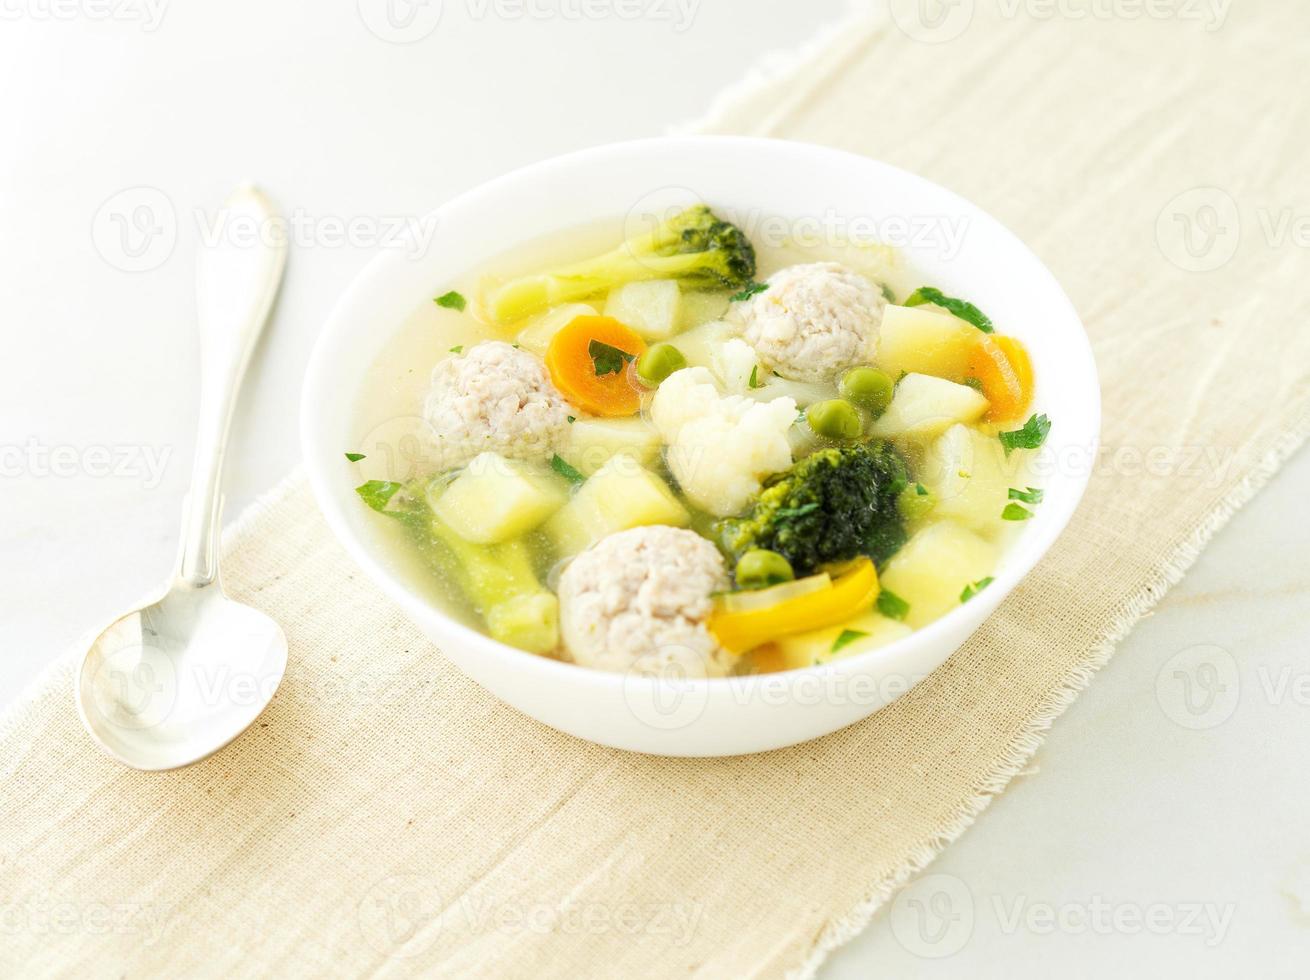 kom soep, een kopje bouillon en groenten, gehaktballen gemaakt van kalkoen en kip, zijaanzicht foto